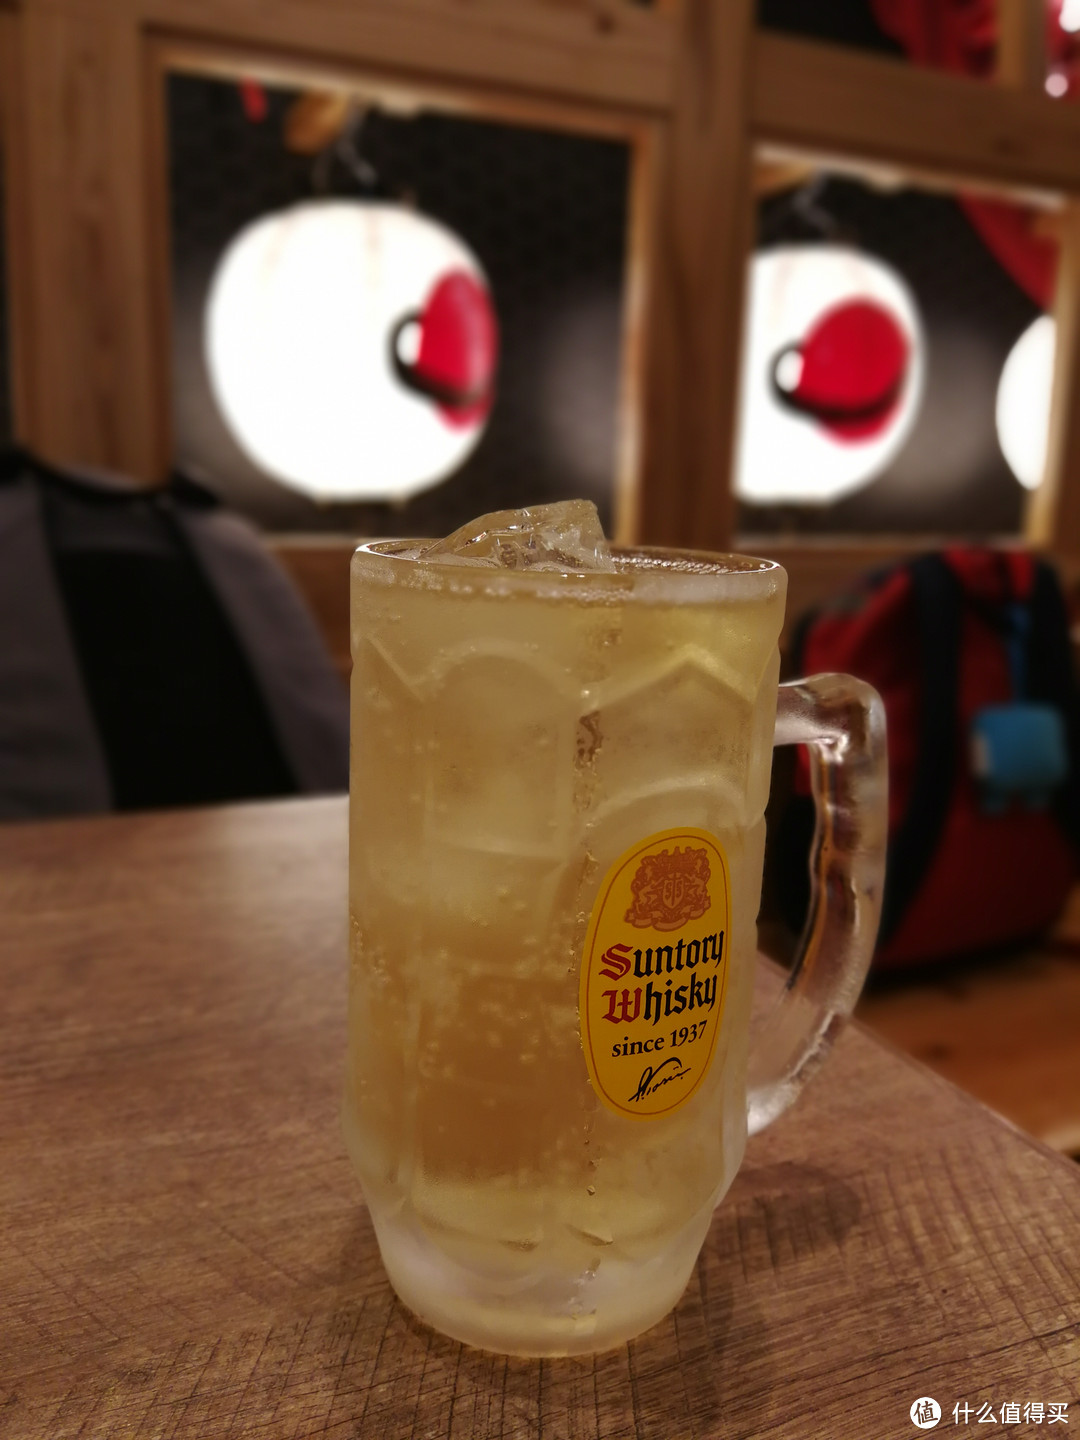 在日本的半个月养成了喝啤酒的习惯，每晚来一杯轻松解乏。